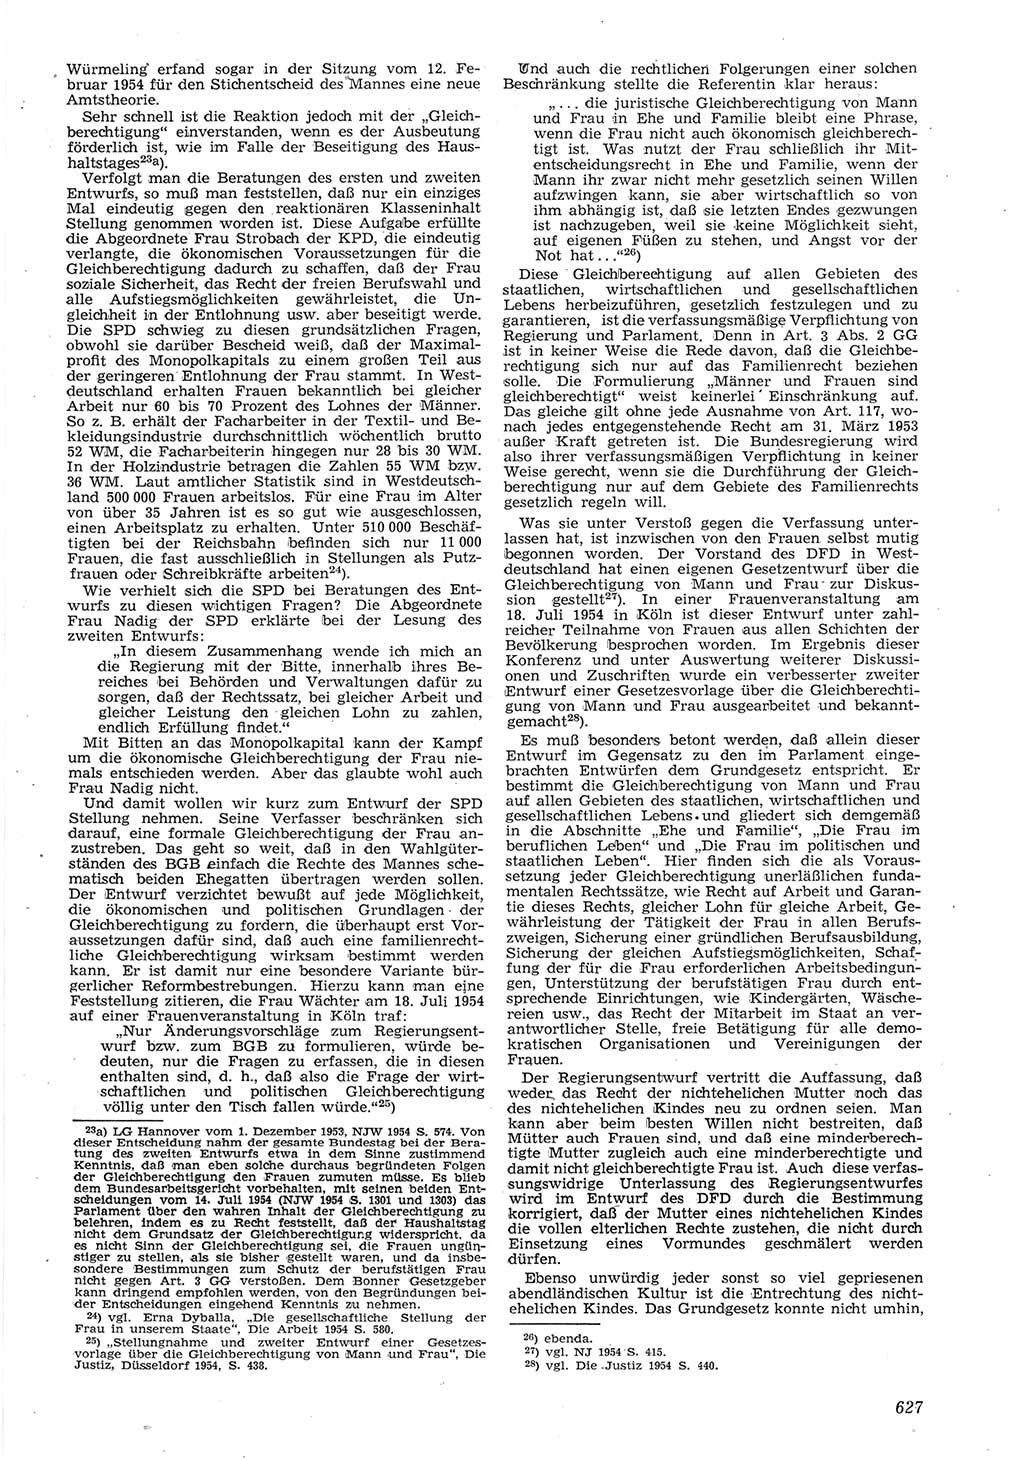 Neue Justiz (NJ), Zeitschrift für Recht und Rechtswissenschaft [Deutsche Demokratische Republik (DDR)], 8. Jahrgang 1954, Seite 627 (NJ DDR 1954, S. 627)